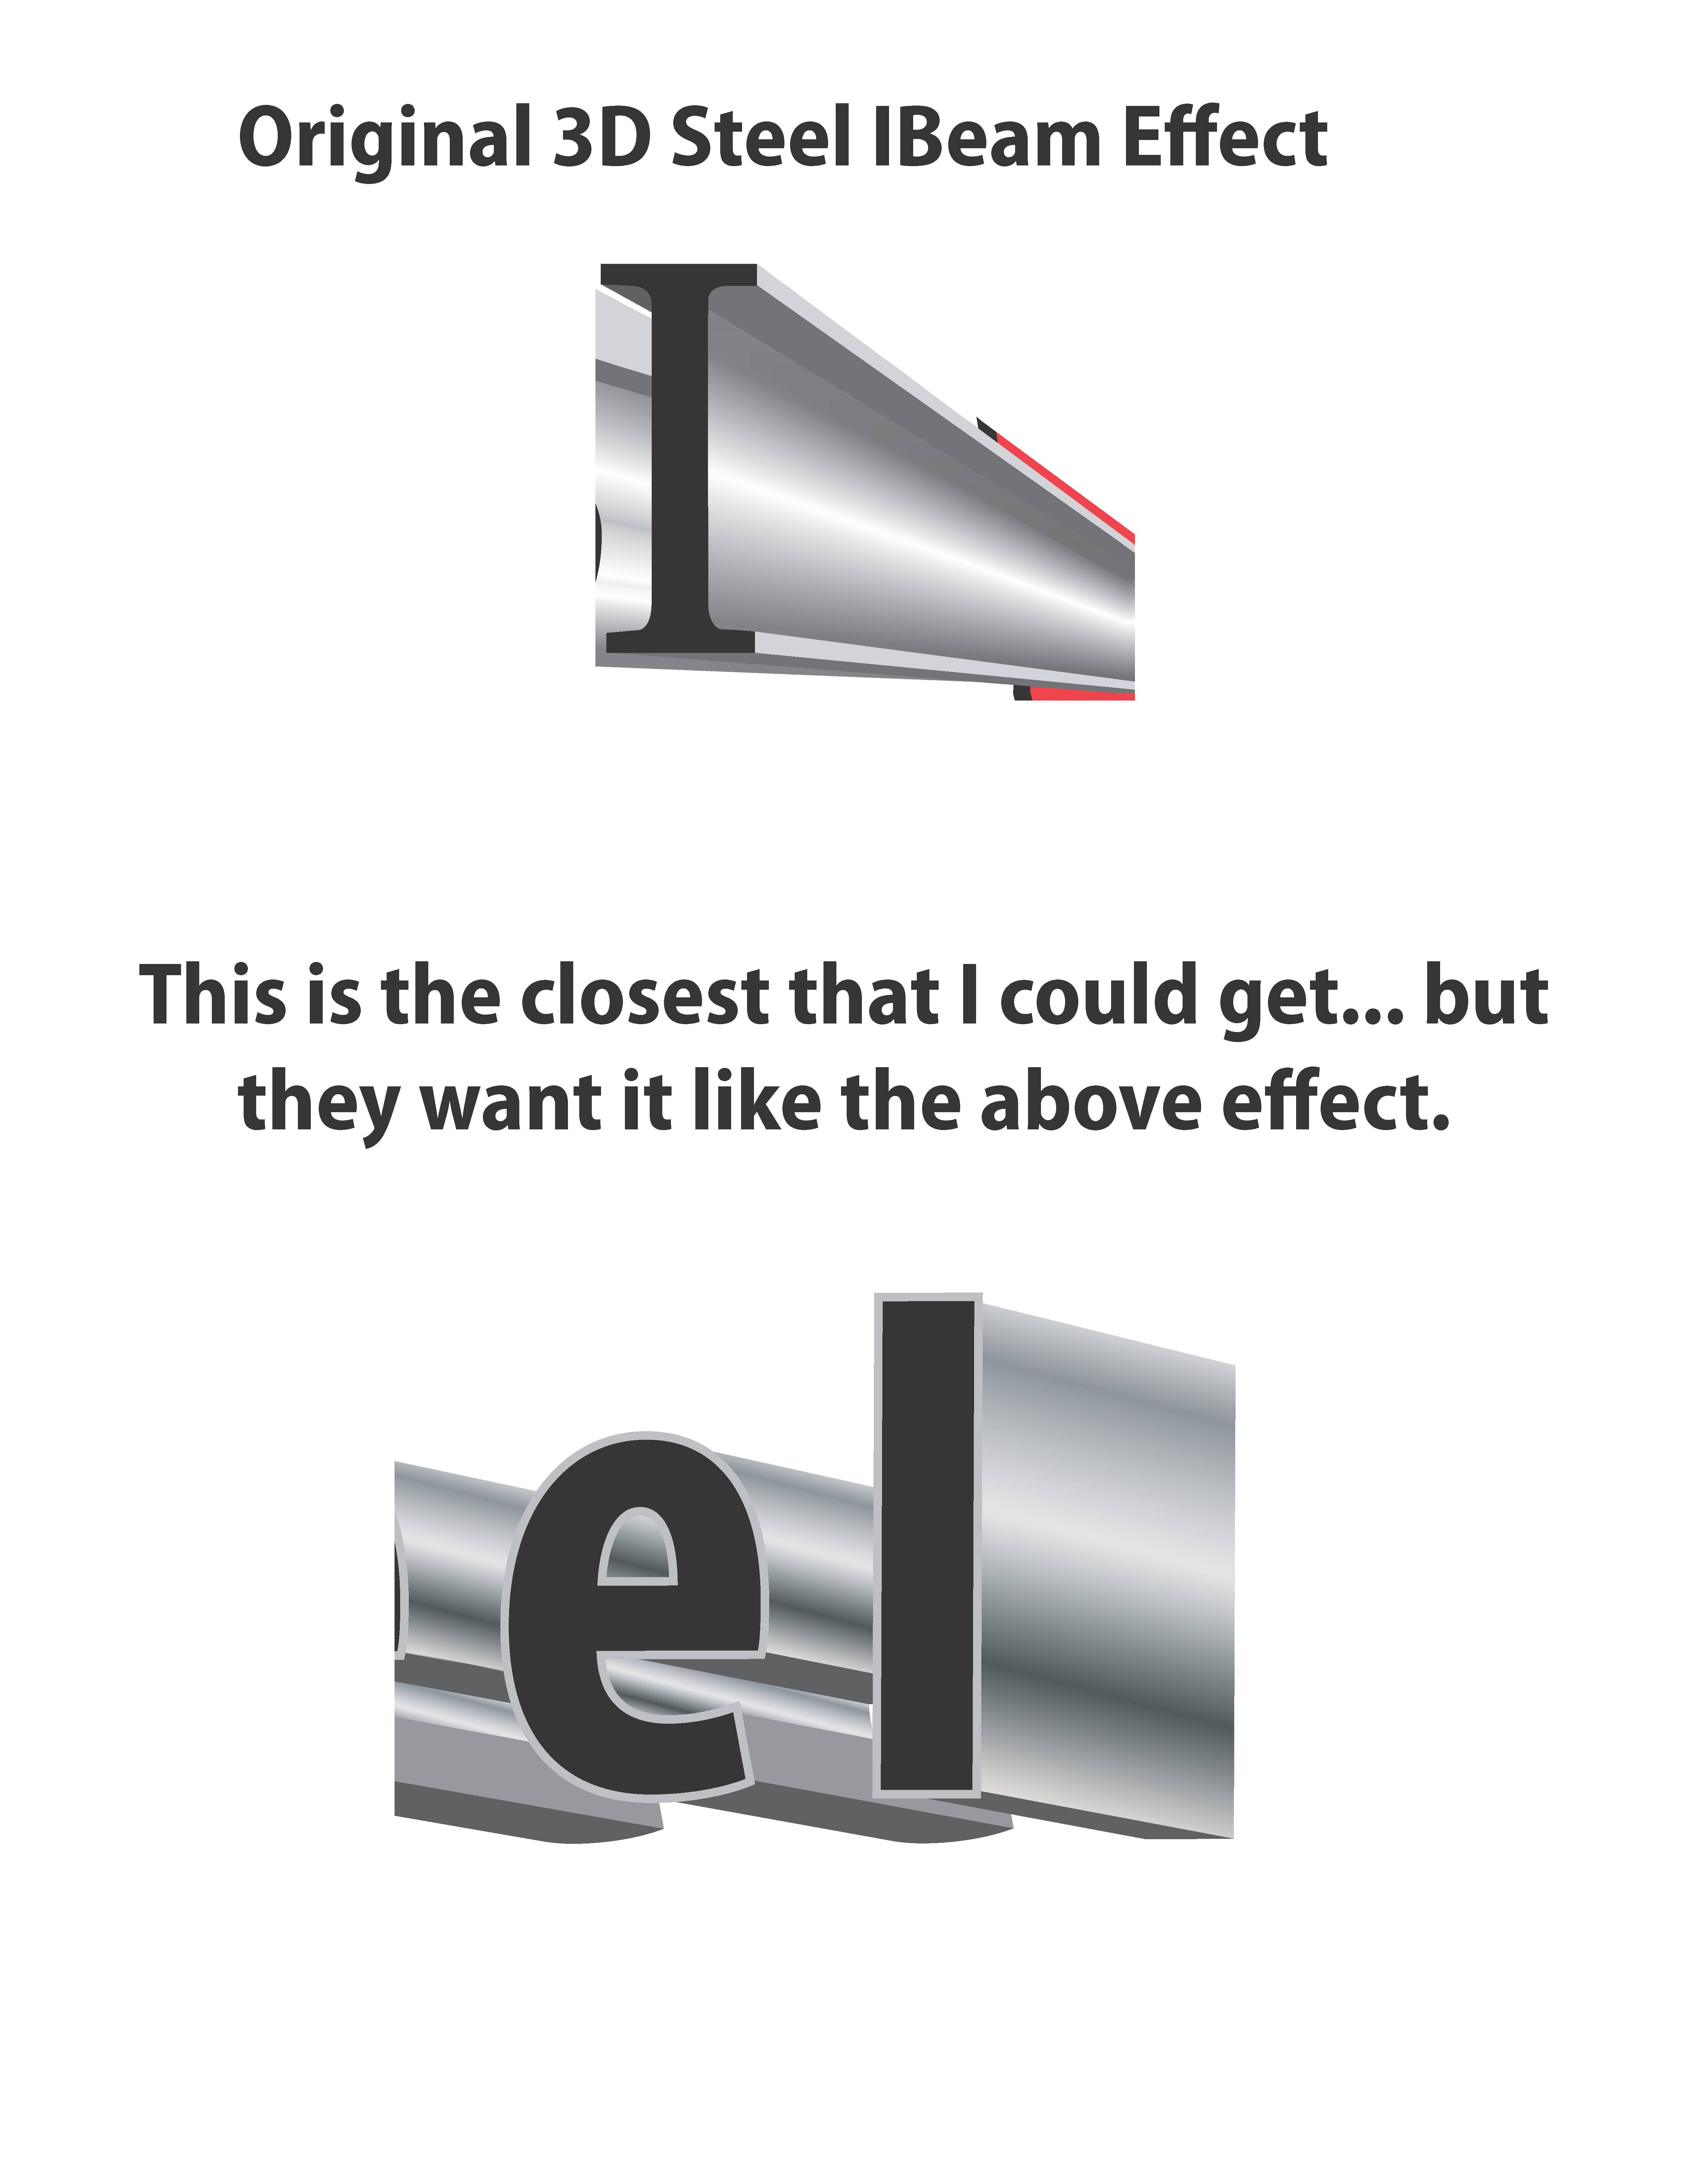 I-Beam Logo - How do I design a 3D Steel IBeam effect on a logo? - Graphic Design ...